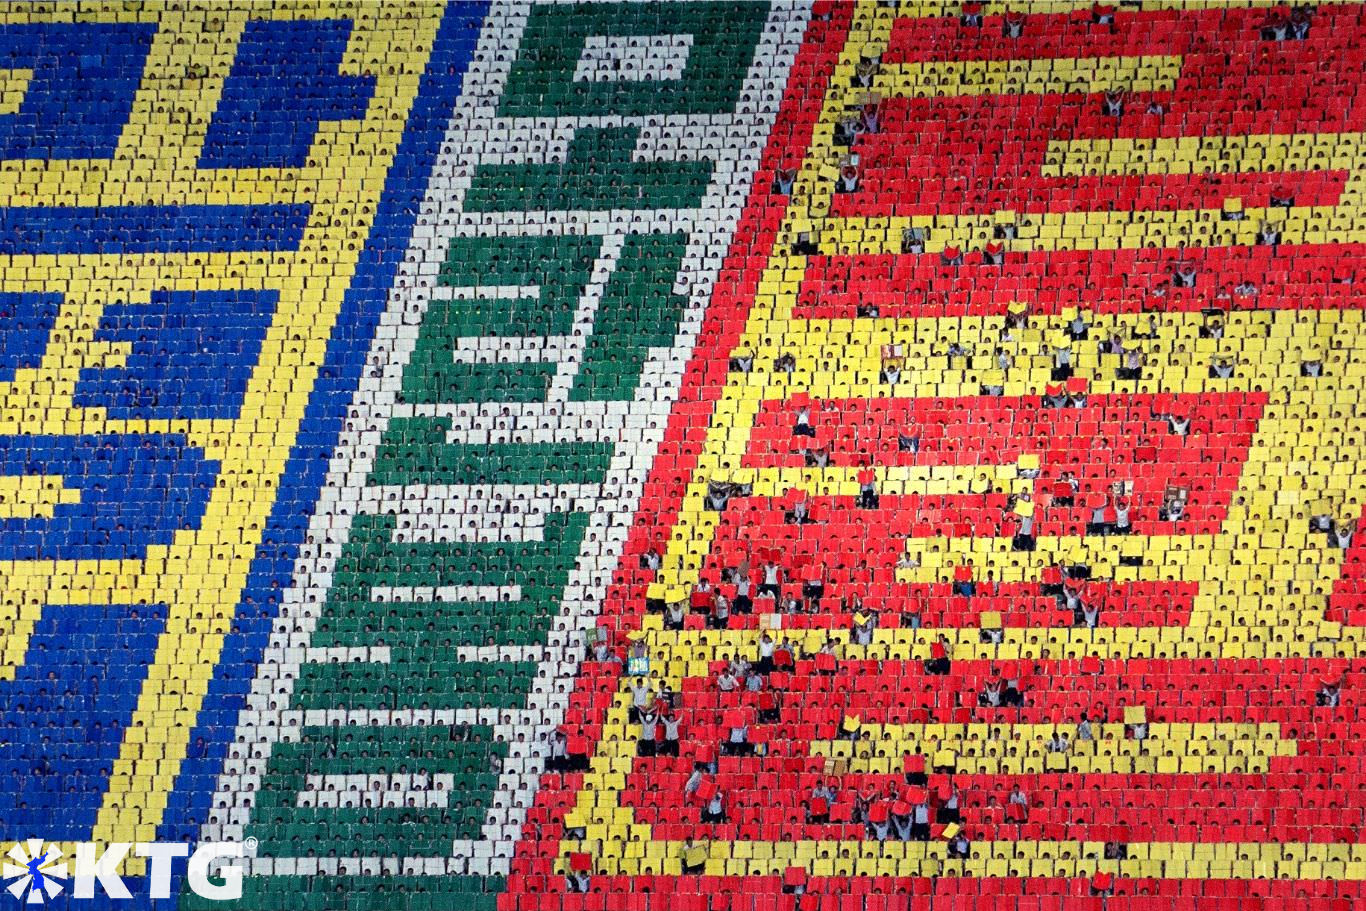 Los Juegos de masas en Corea del Norte tienen un telón de fondo de 17,000 estudiantes. Cada estudiante hace un pequeño píxel creando mosaicos gigantes. Viaje organizado por KTG Travel